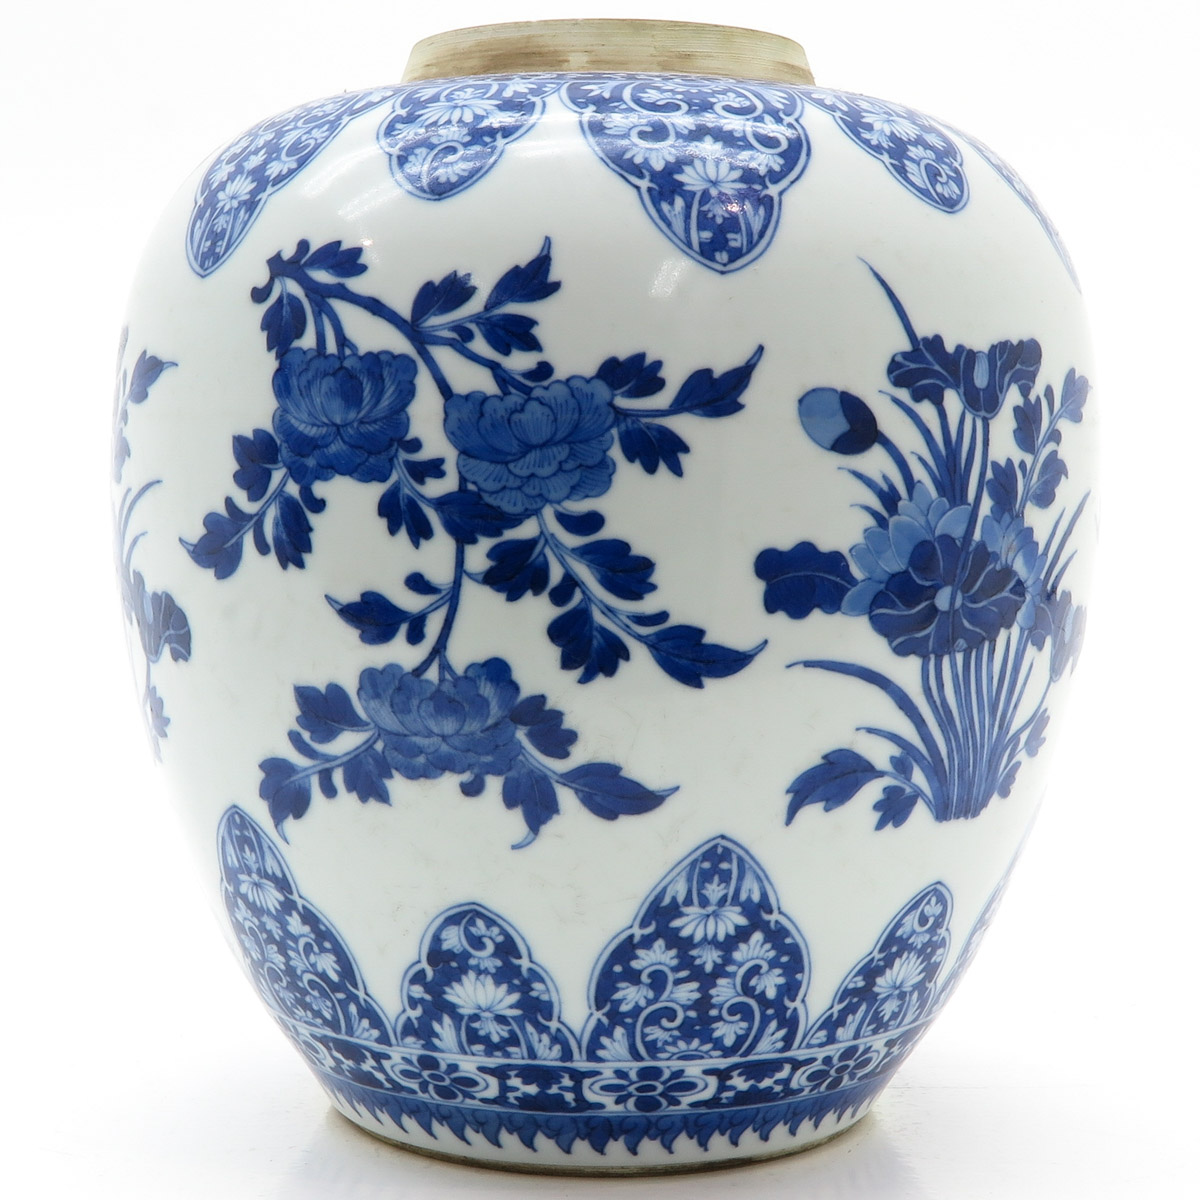 China Porcelain Ginger Jar - Image 3 of 6